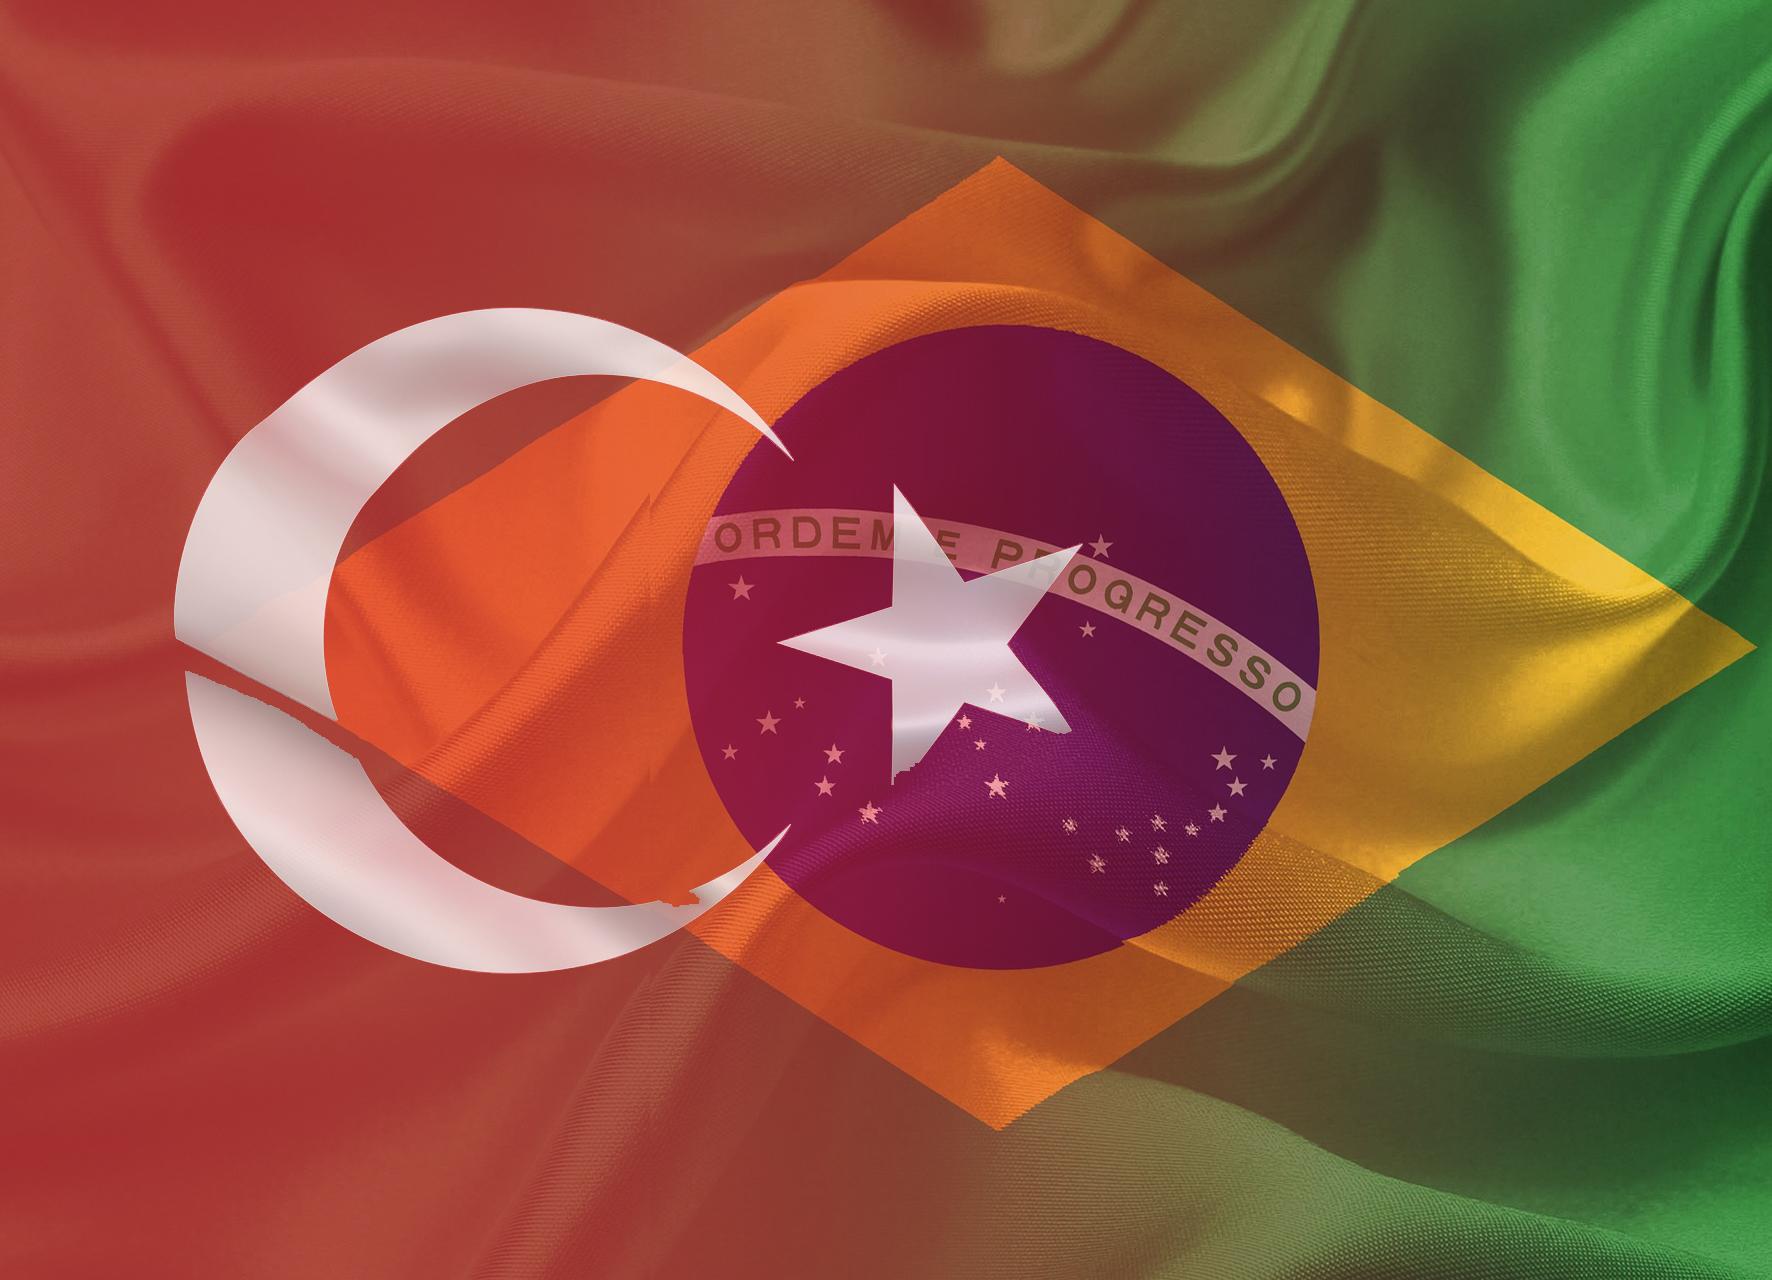 Crise econômica na Turquia pode prejudicar pecuária brasileira